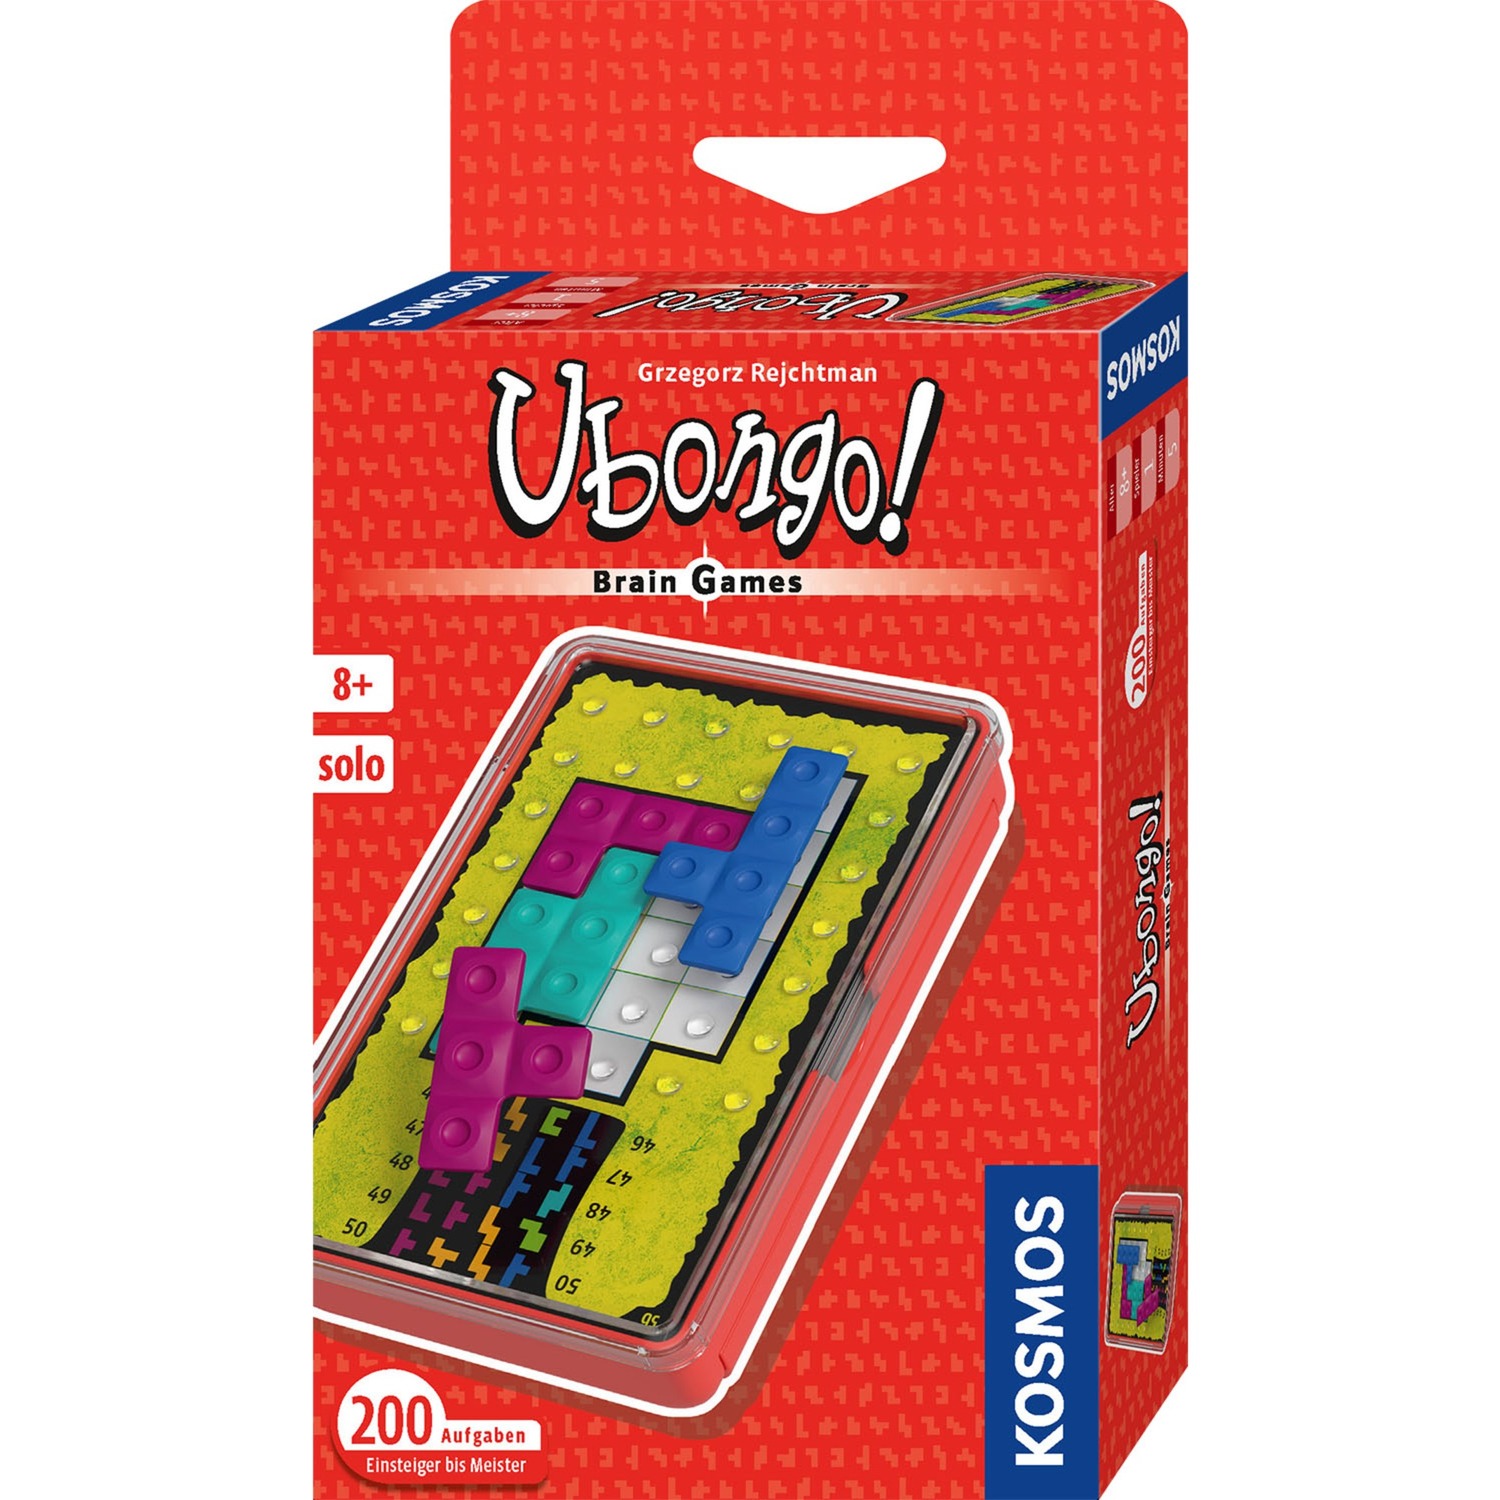 Image of Alternate - Ubongo - Brain Games, Geschicklichkeitsspiel online einkaufen bei Alternate